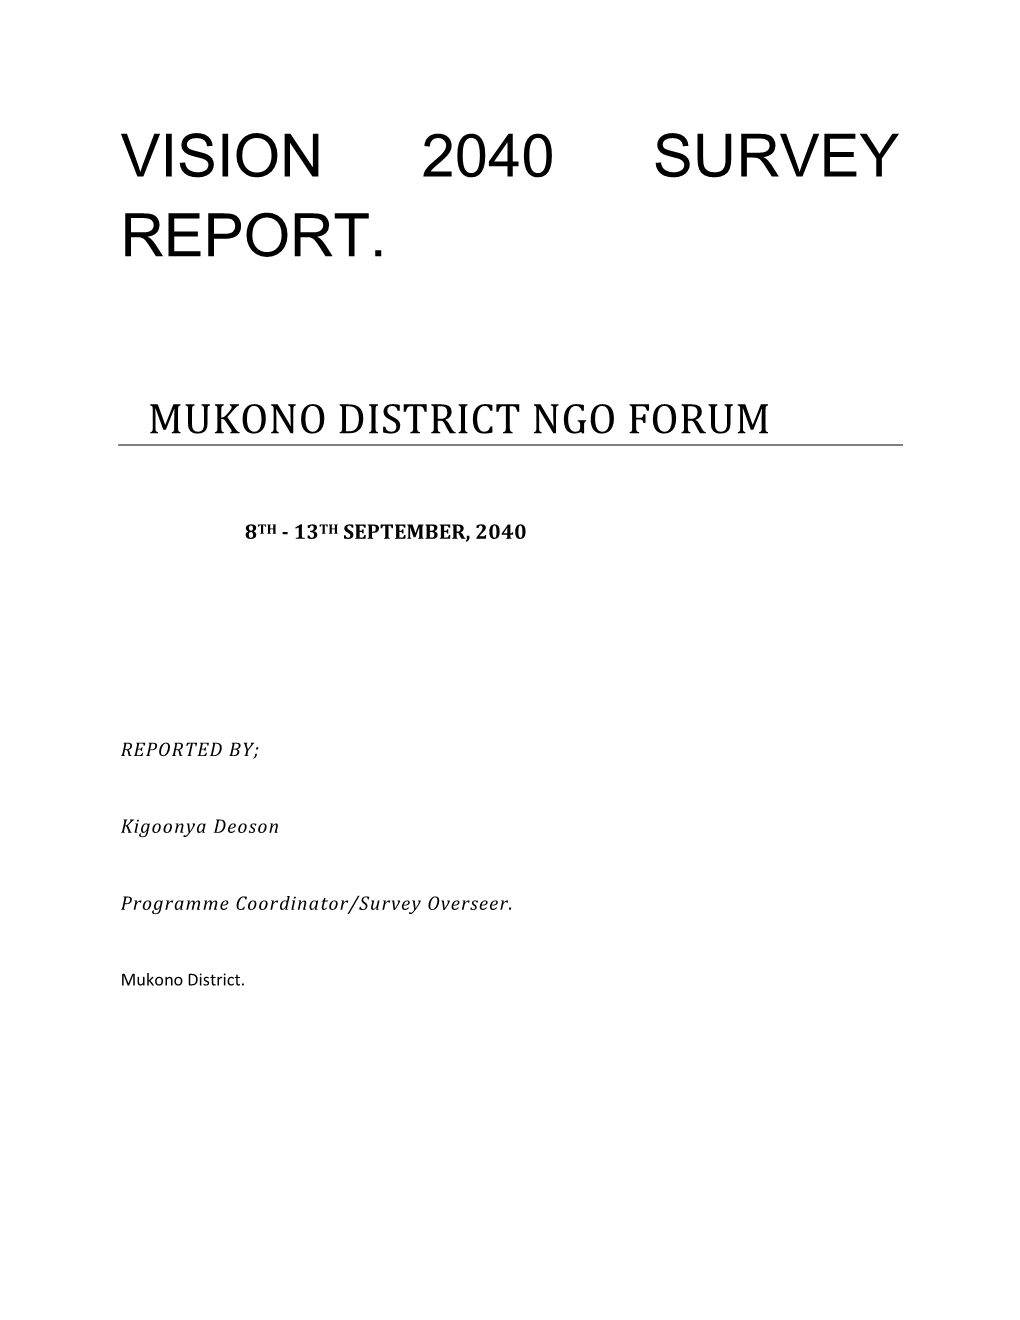 Vision 2040 Survey Report